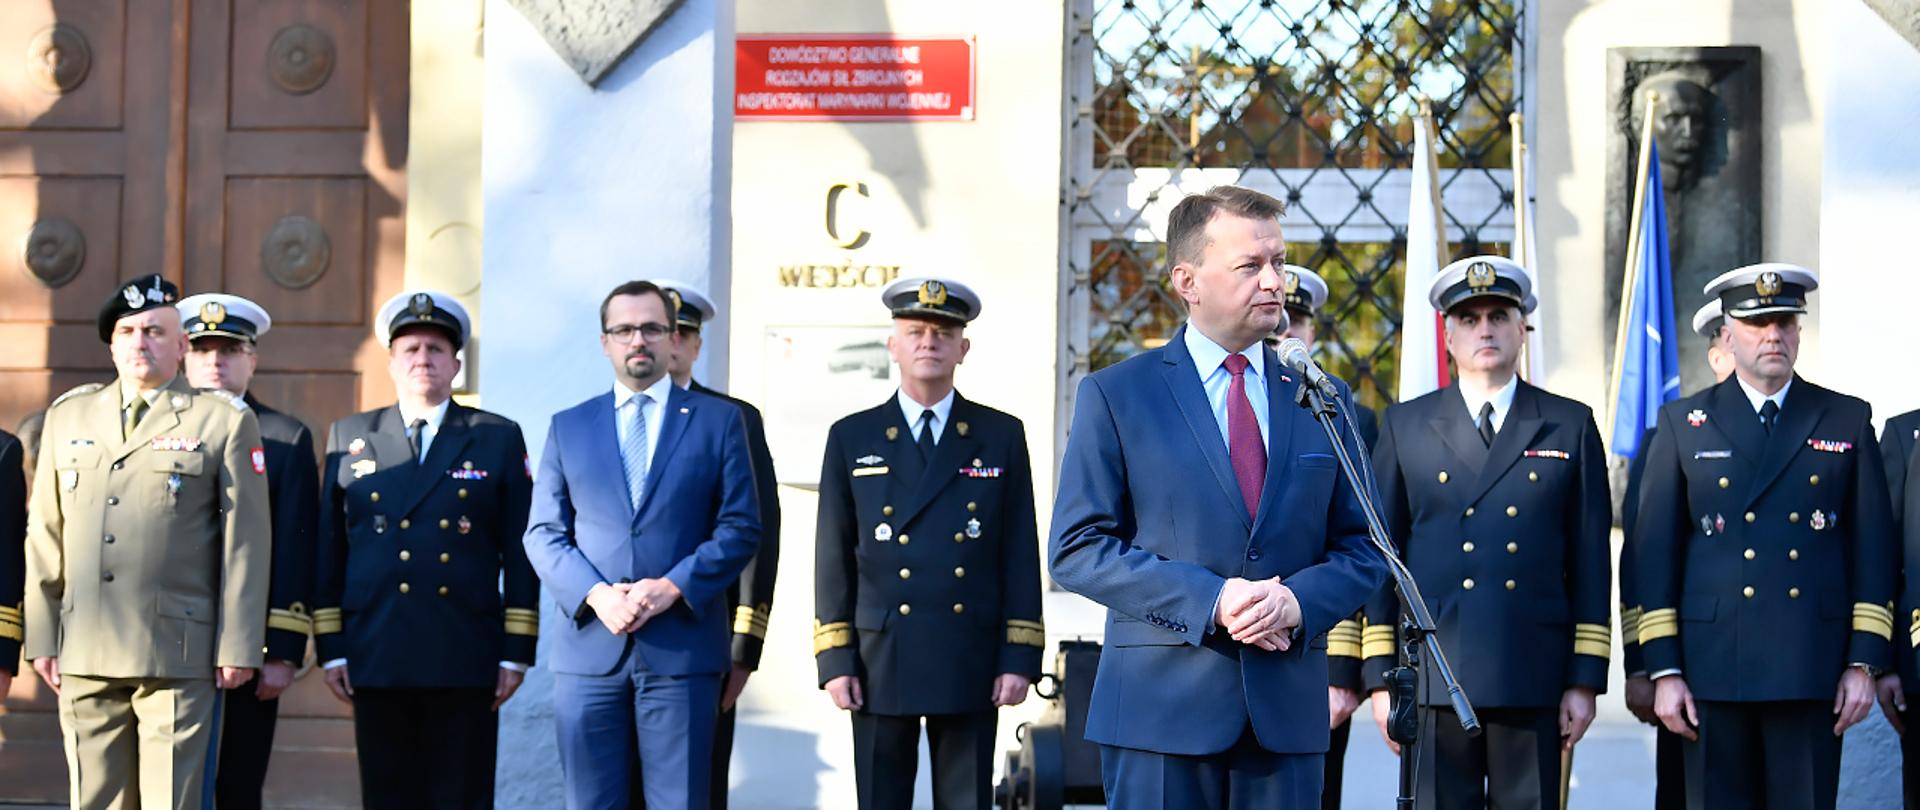 Inauguracja funkcjonowania w Gdyni Inspektoratu Marynarki Wojennej, który został przeniesiony z Warszawy.